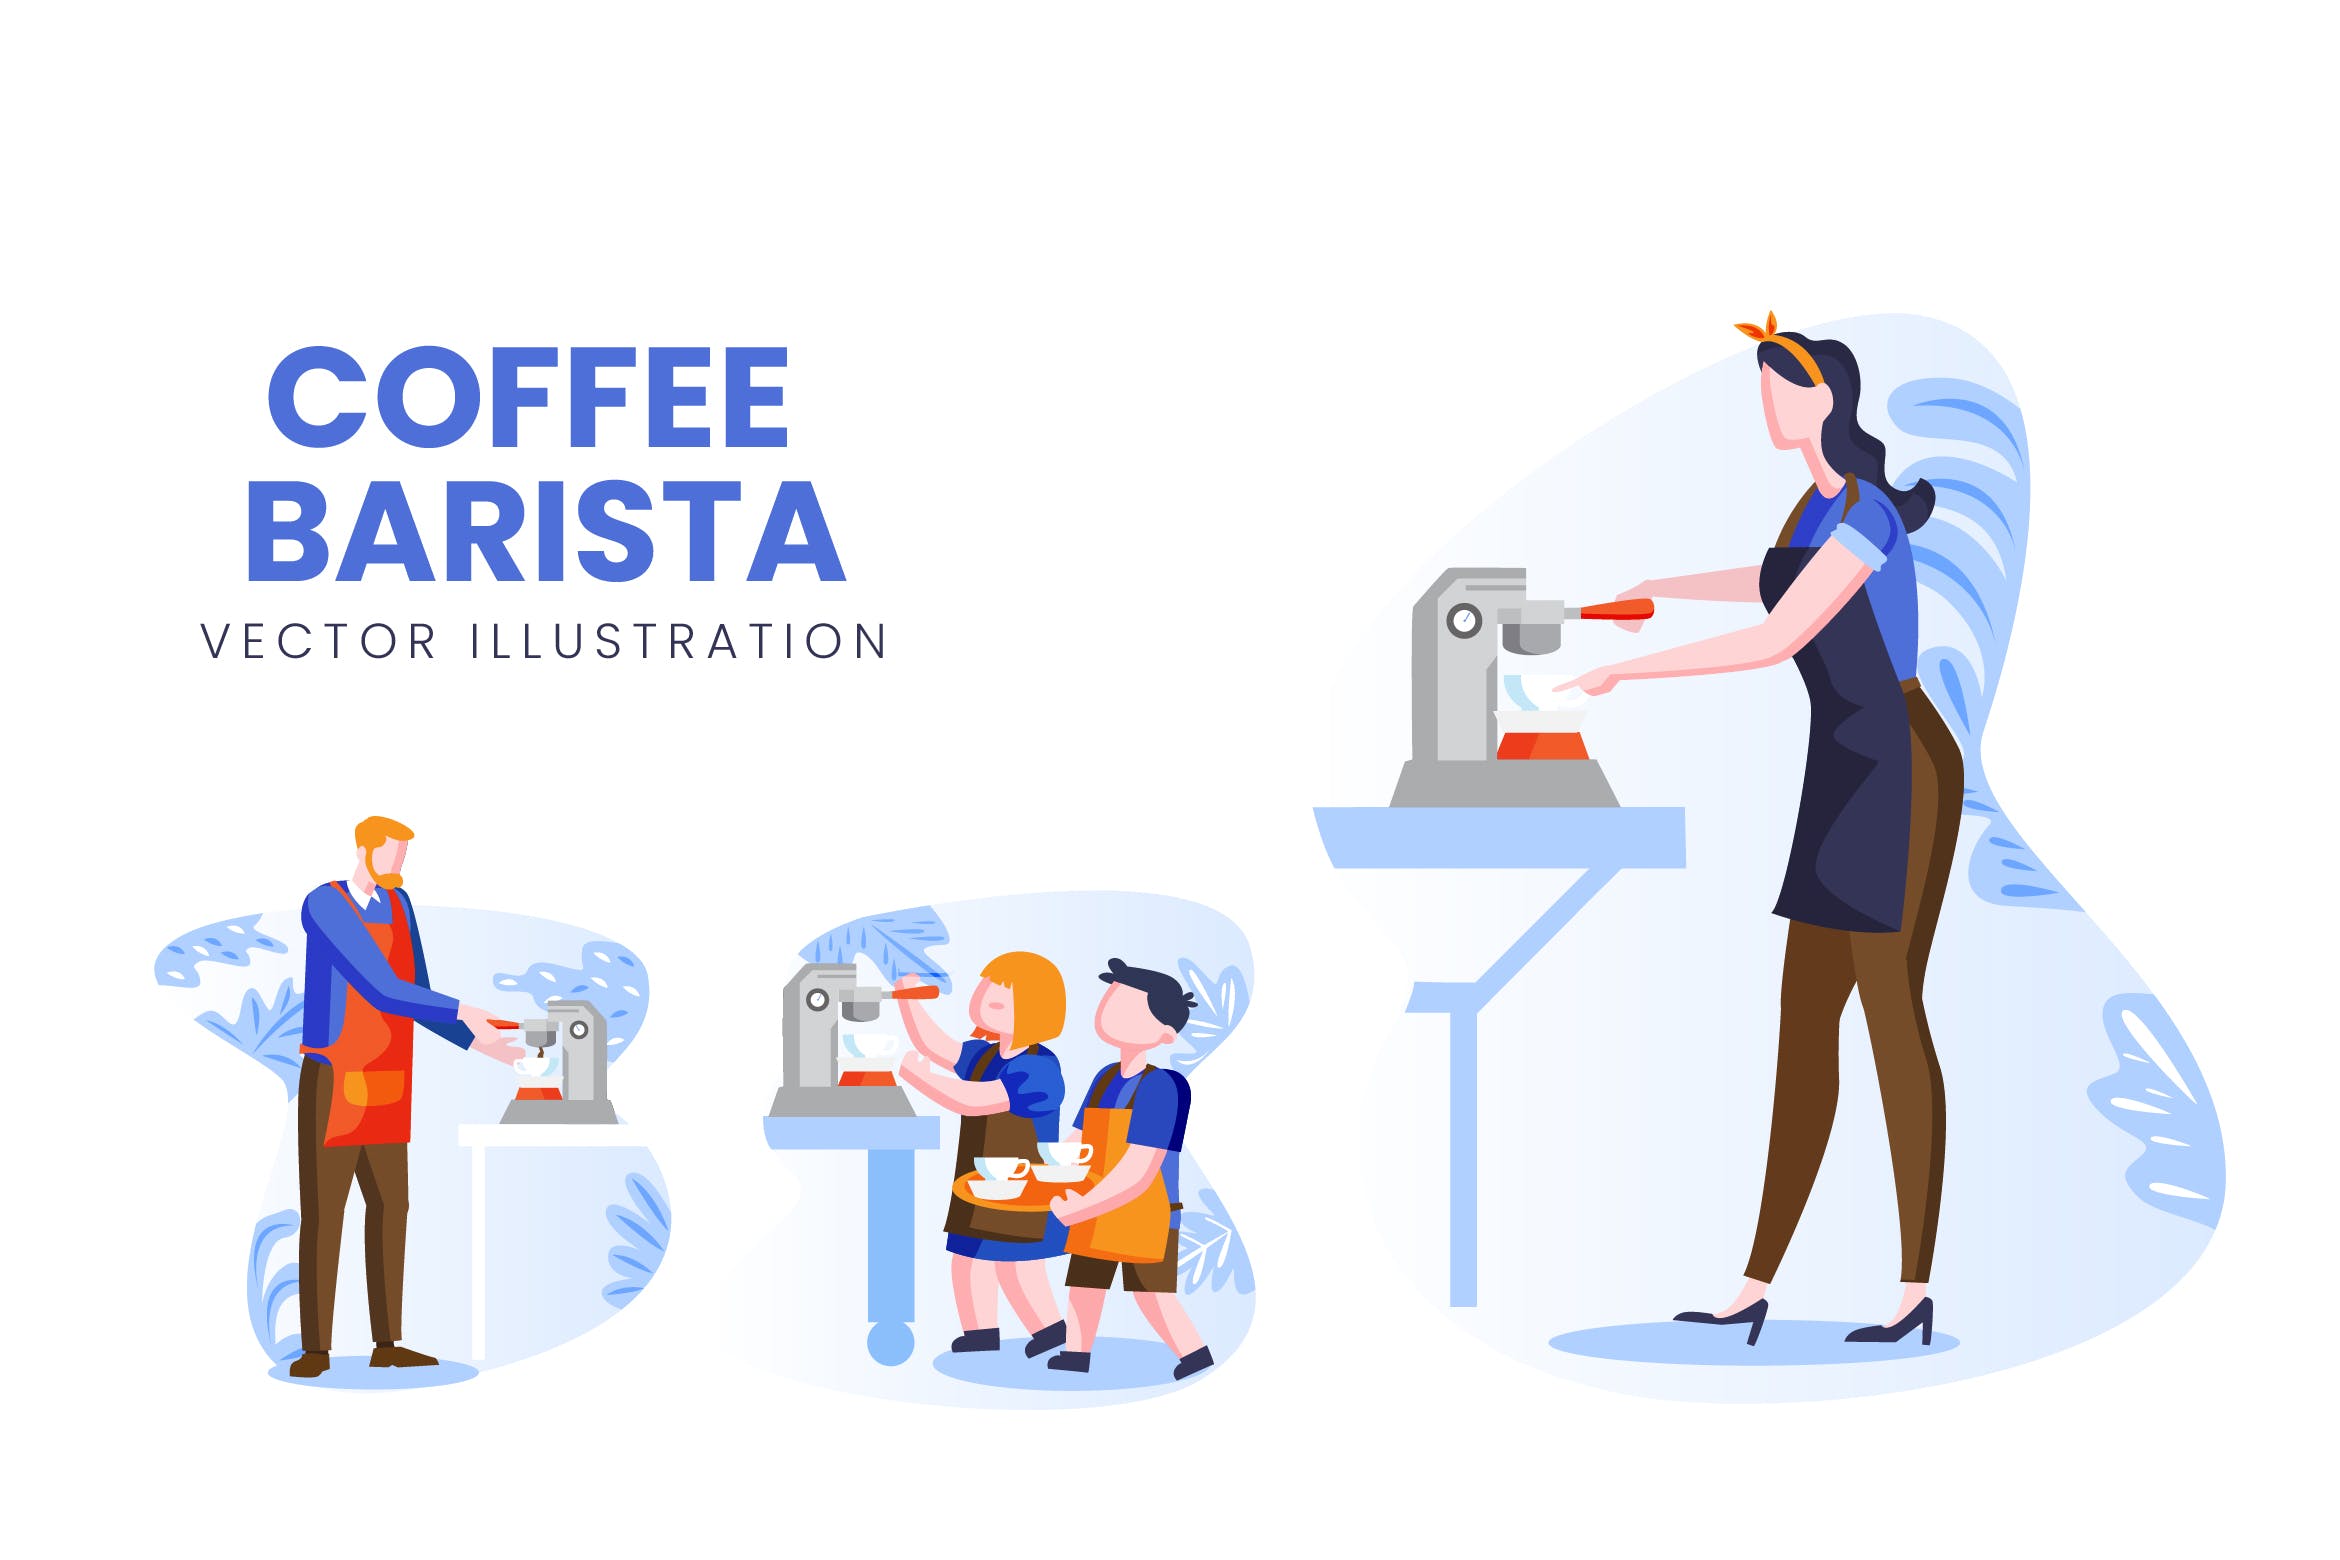 咖啡师人物形象蚂蚁素材精选手绘插画矢量素材 Coffee Barista Vector Character Set插图